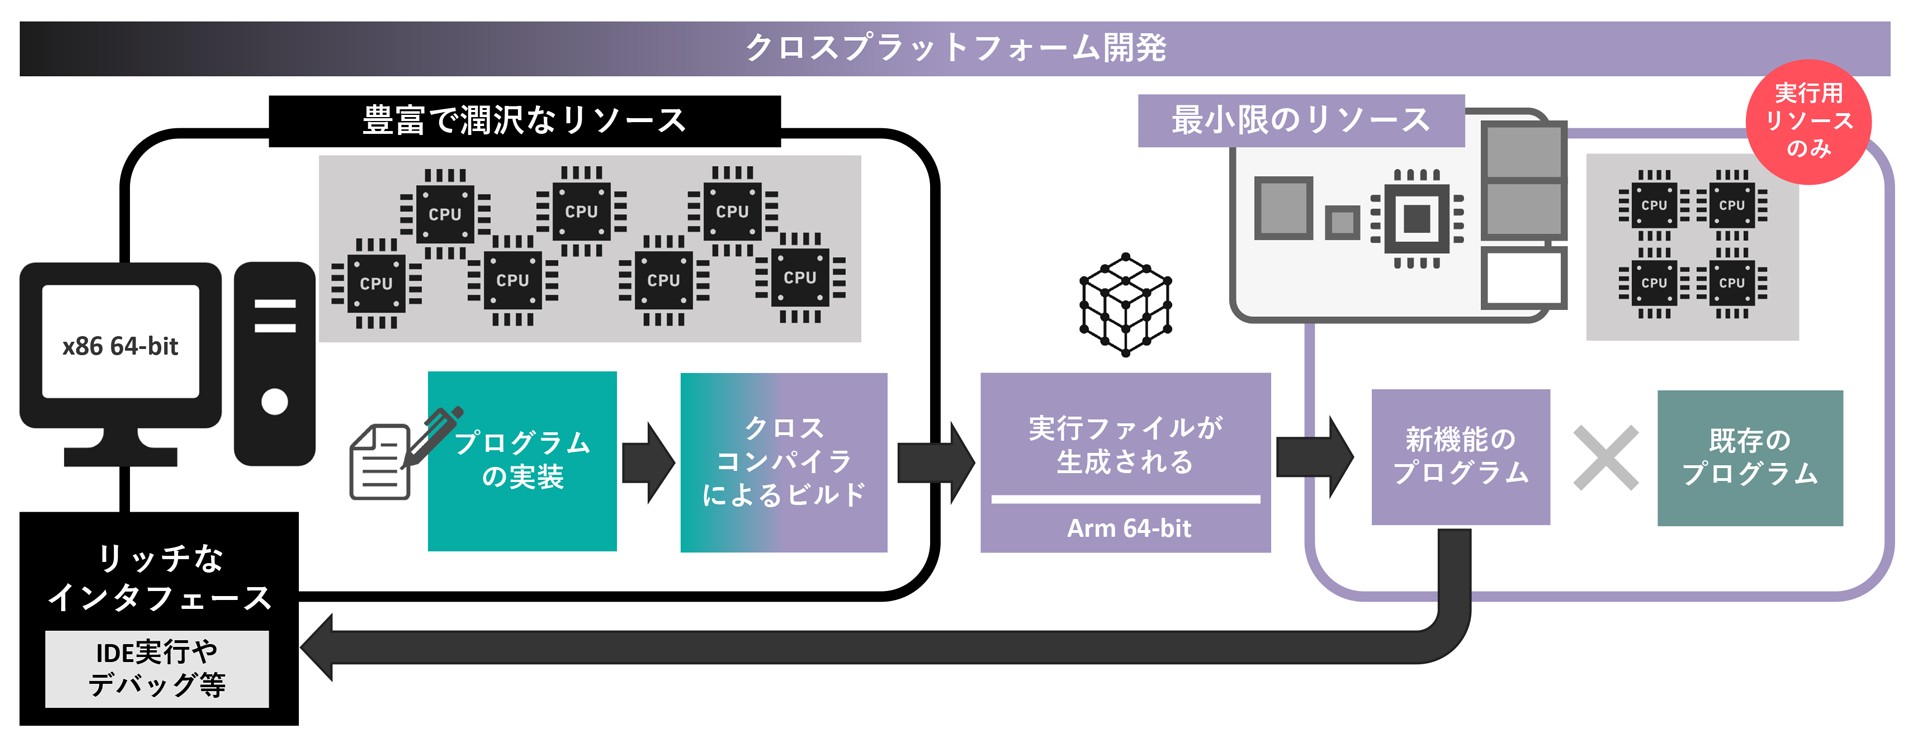 日本限定モデル】 インターフェース 組み込みクロス開発環境構築 